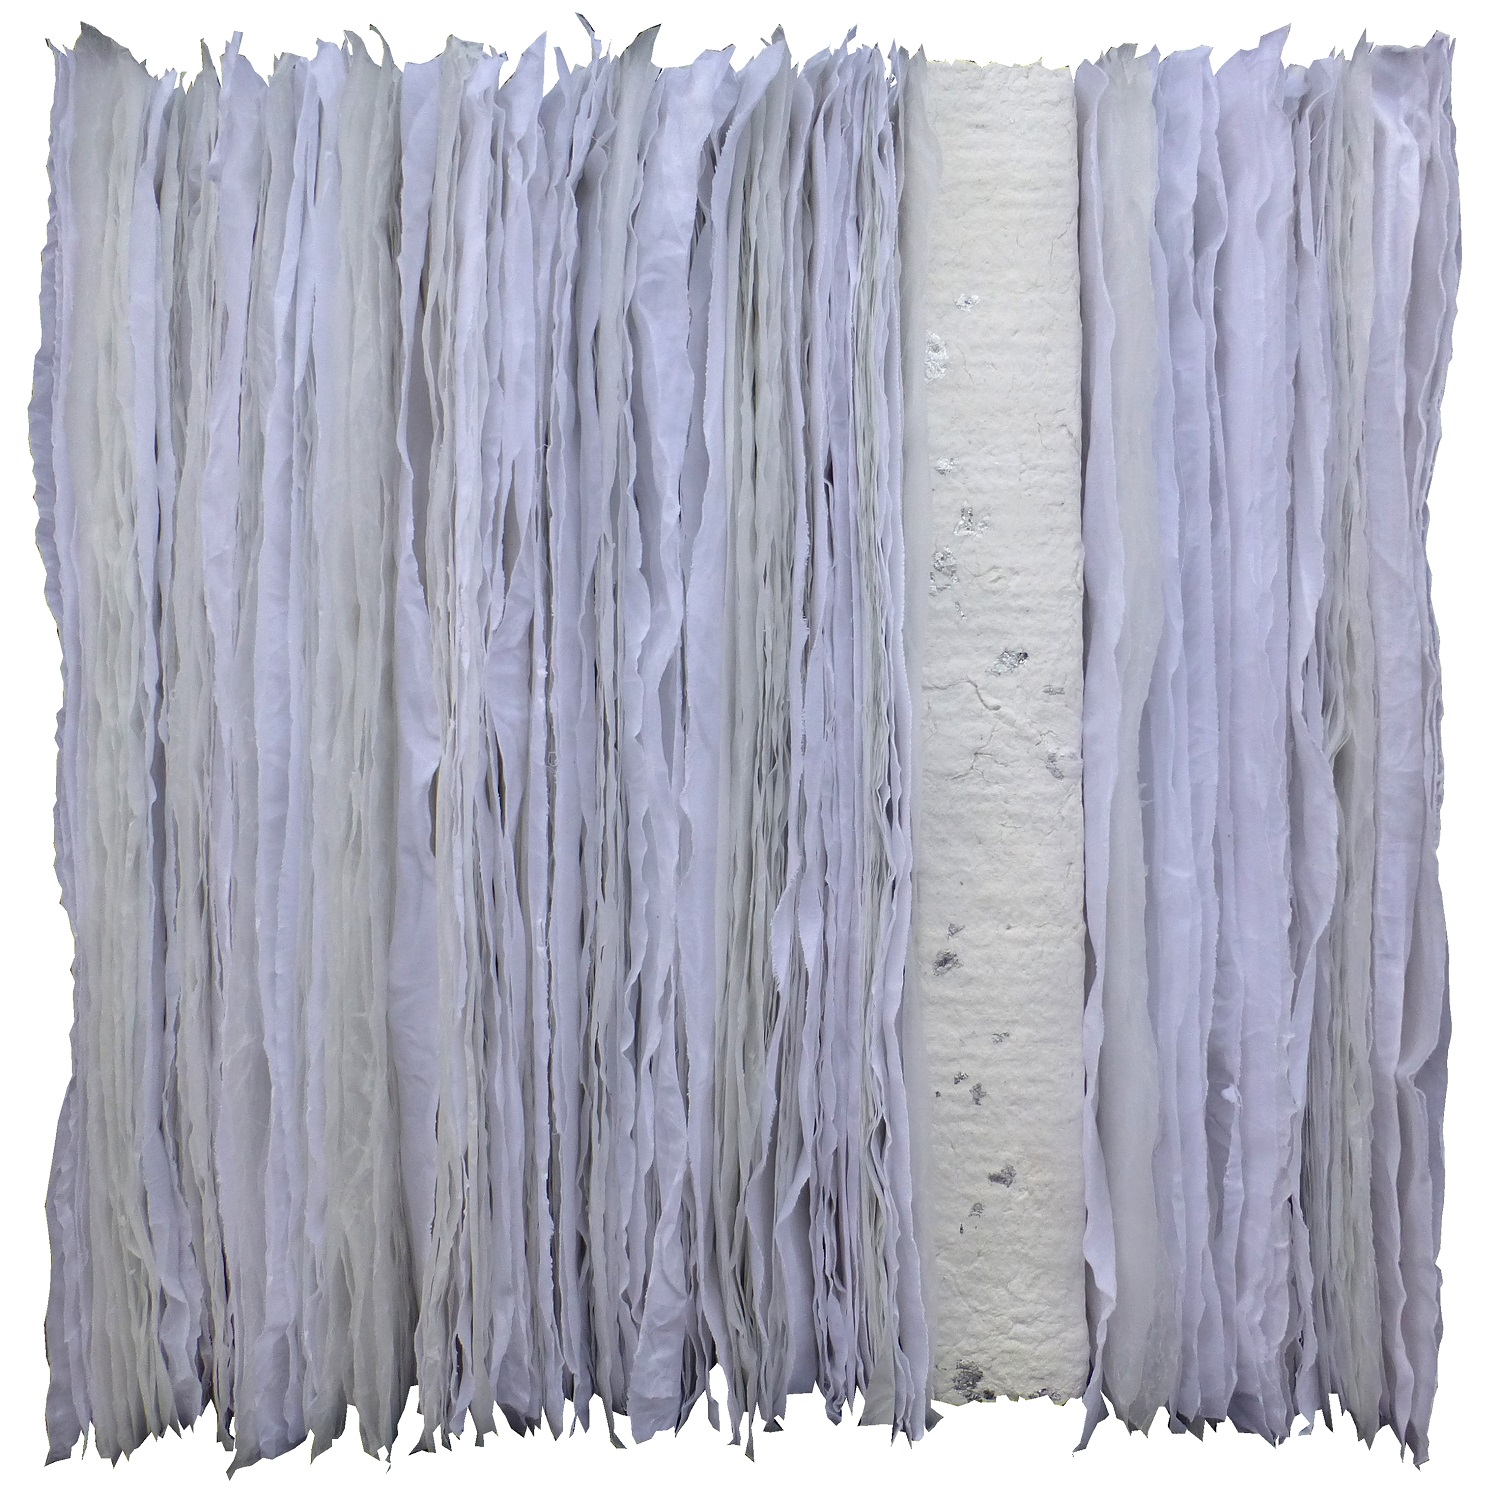 Glatsch Engiadinais | Papyrus, Handgeschpftes Papier, Cotton, Paraffin | 80 x 80 x 20 cm